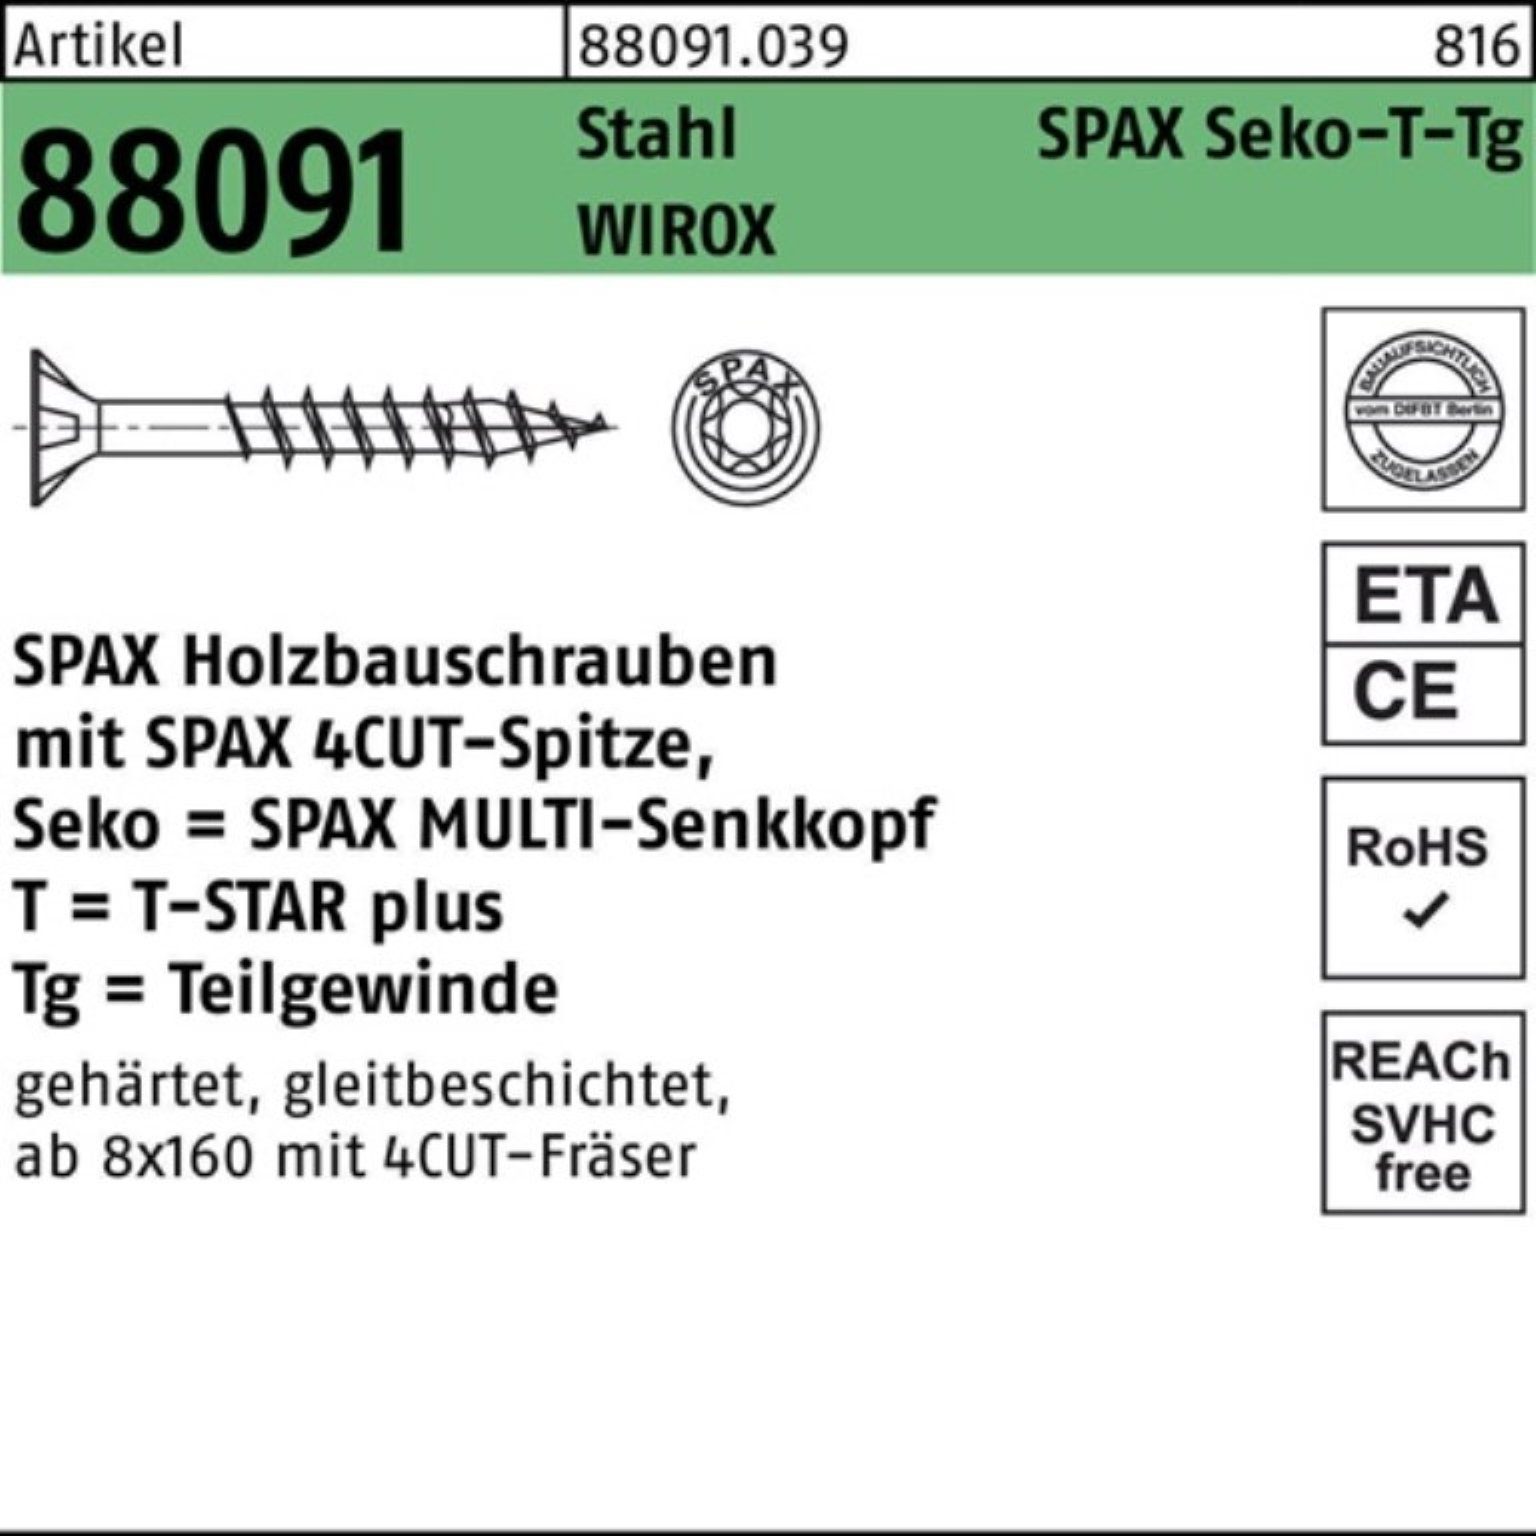 SPAX Schraube 100er Pack Schraube R 88091 SEKO/T-STAR TG 10x 220/80-T50 Stahl WIROX